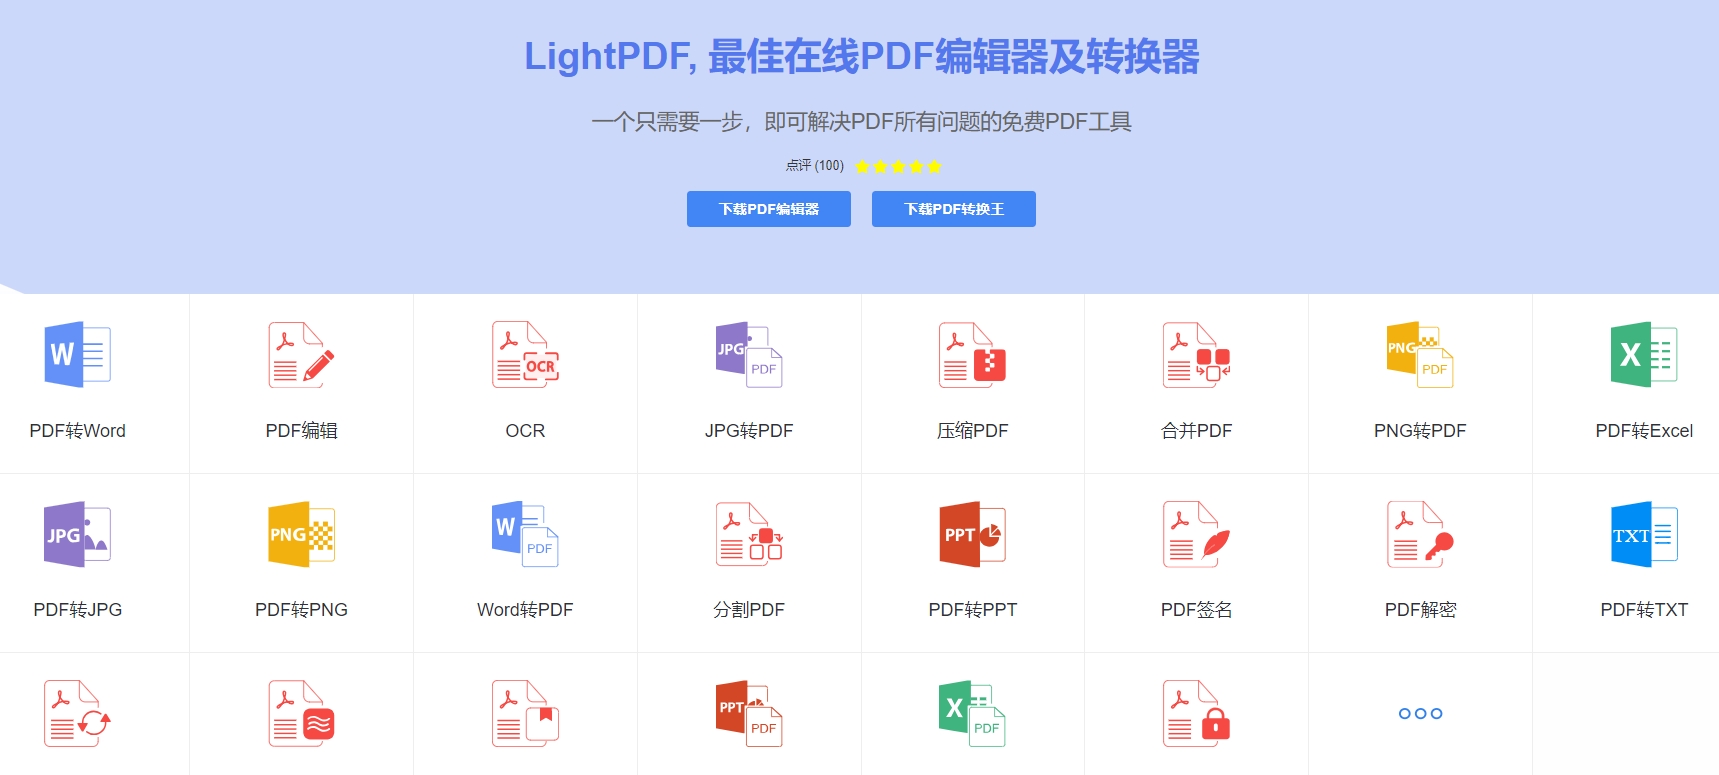 LightPDF.jpg